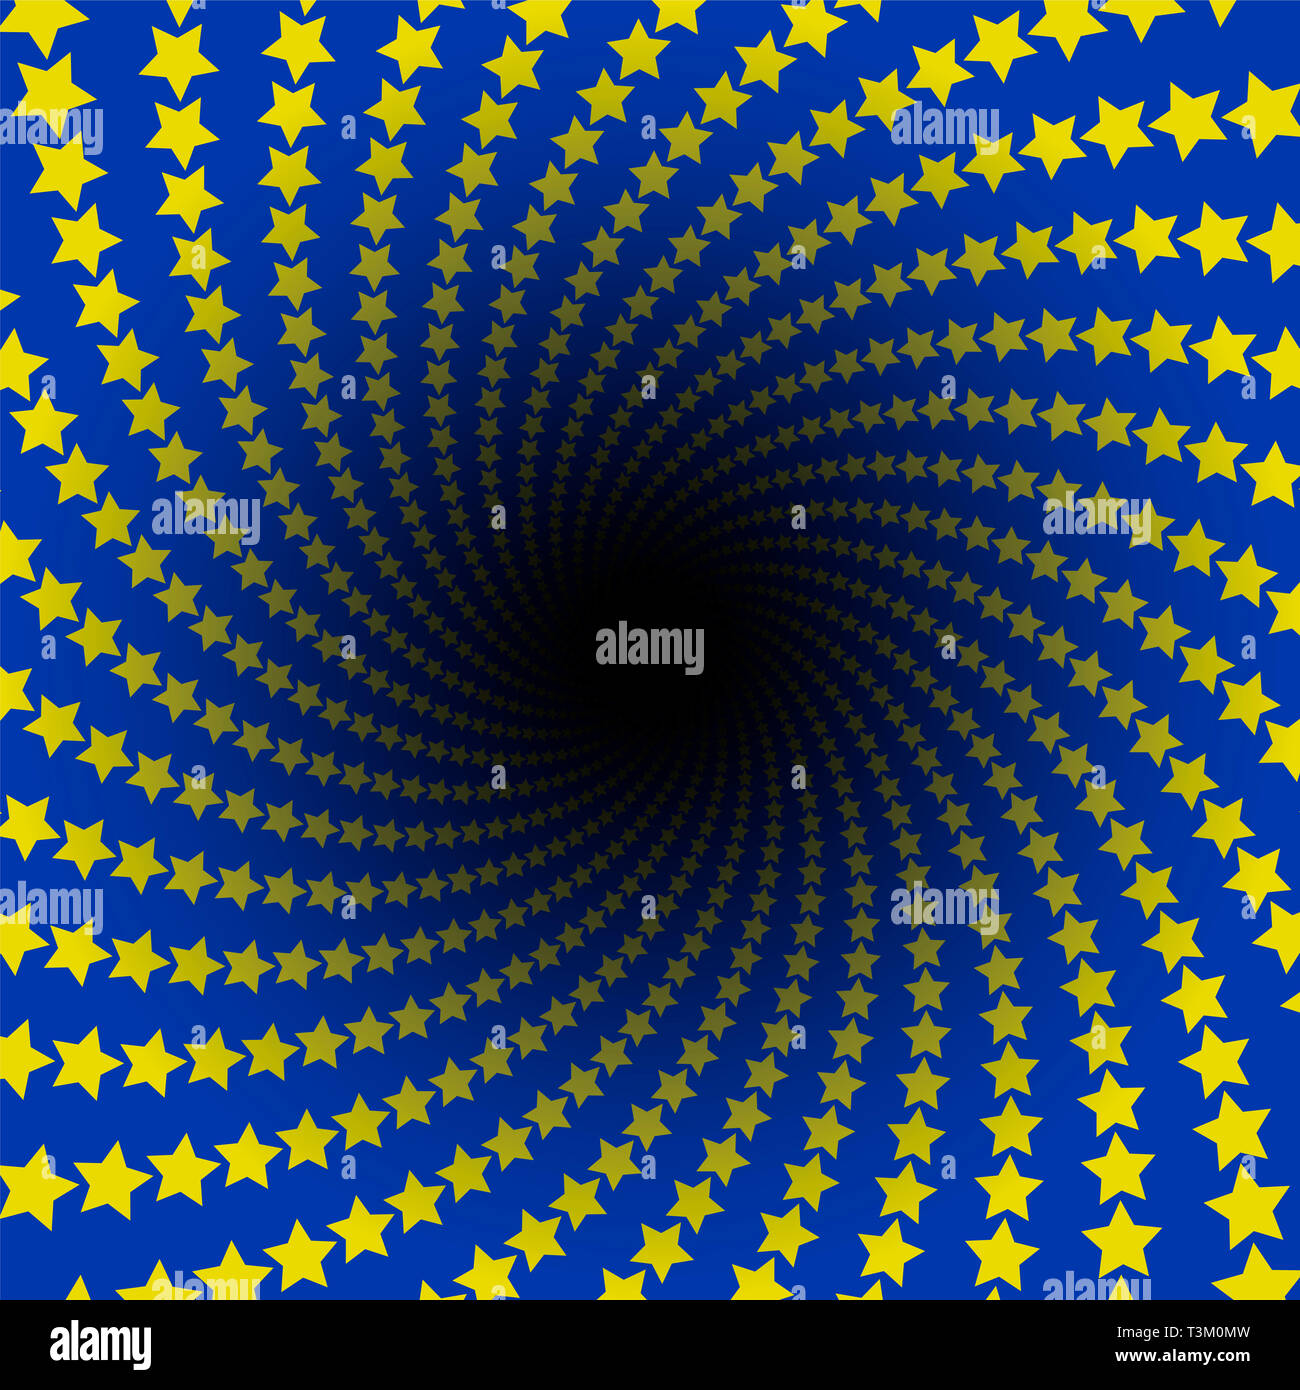 Patrón de estrella. Espiral infinito con agujero negro. Estrellas amarillas sobre fondo azul, los colores de la bandera europea. Ilustración fractal circulares trenzados. Foto de stock